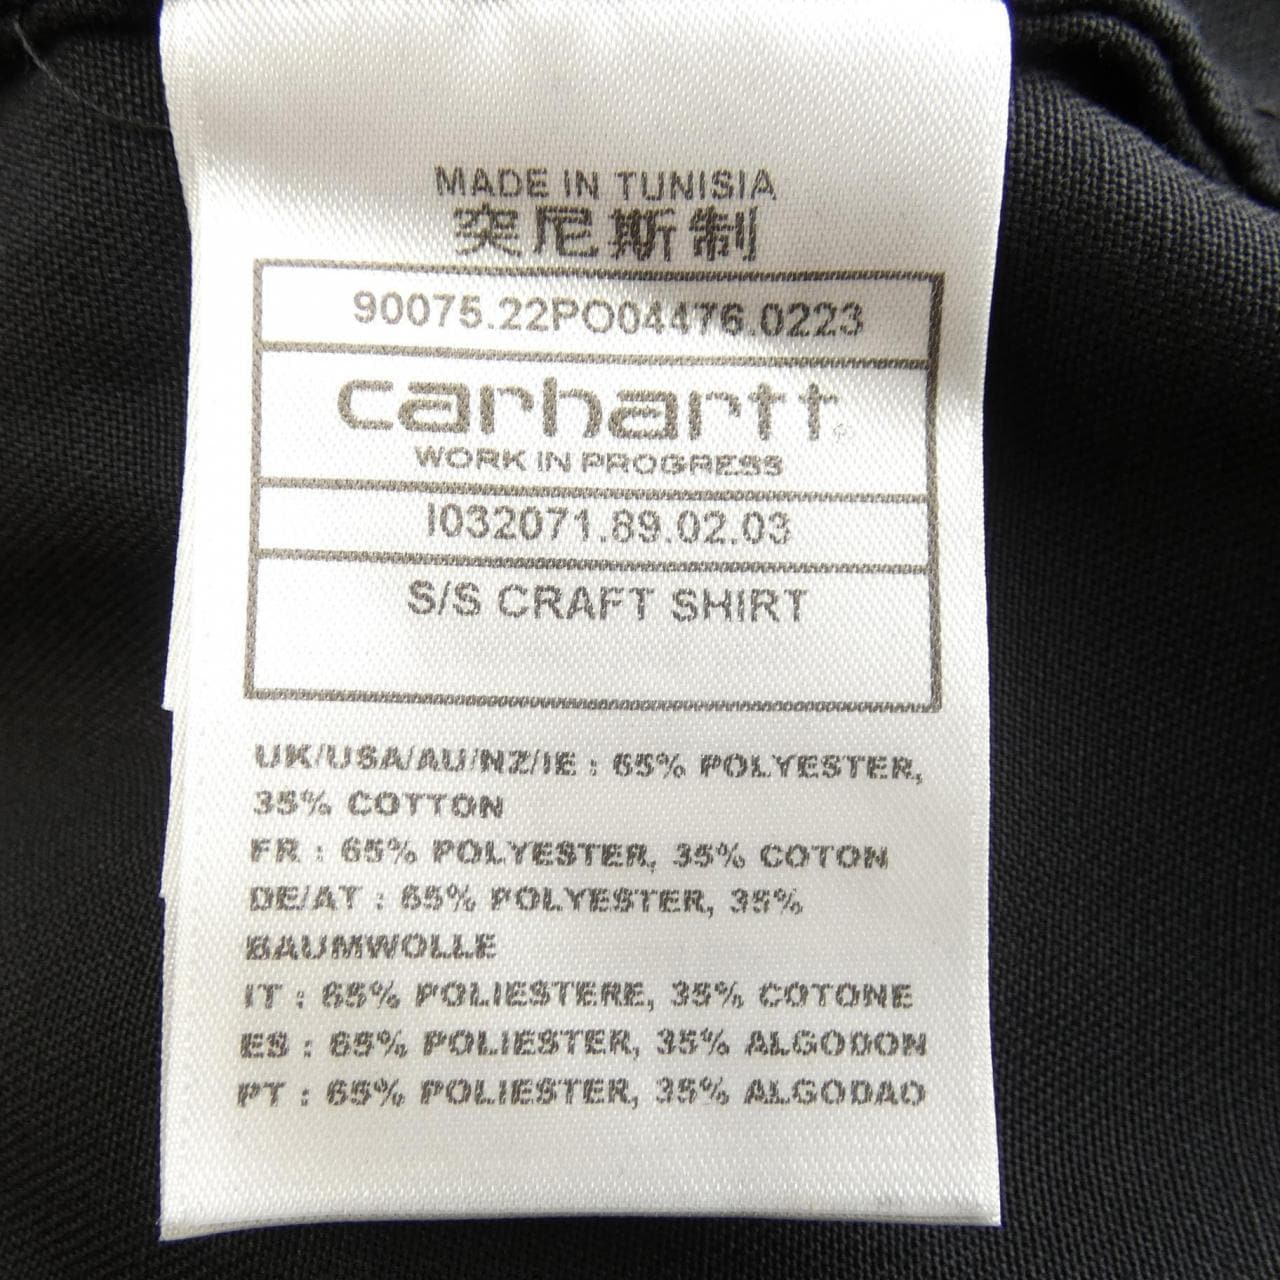 Carhartt S/S shirt